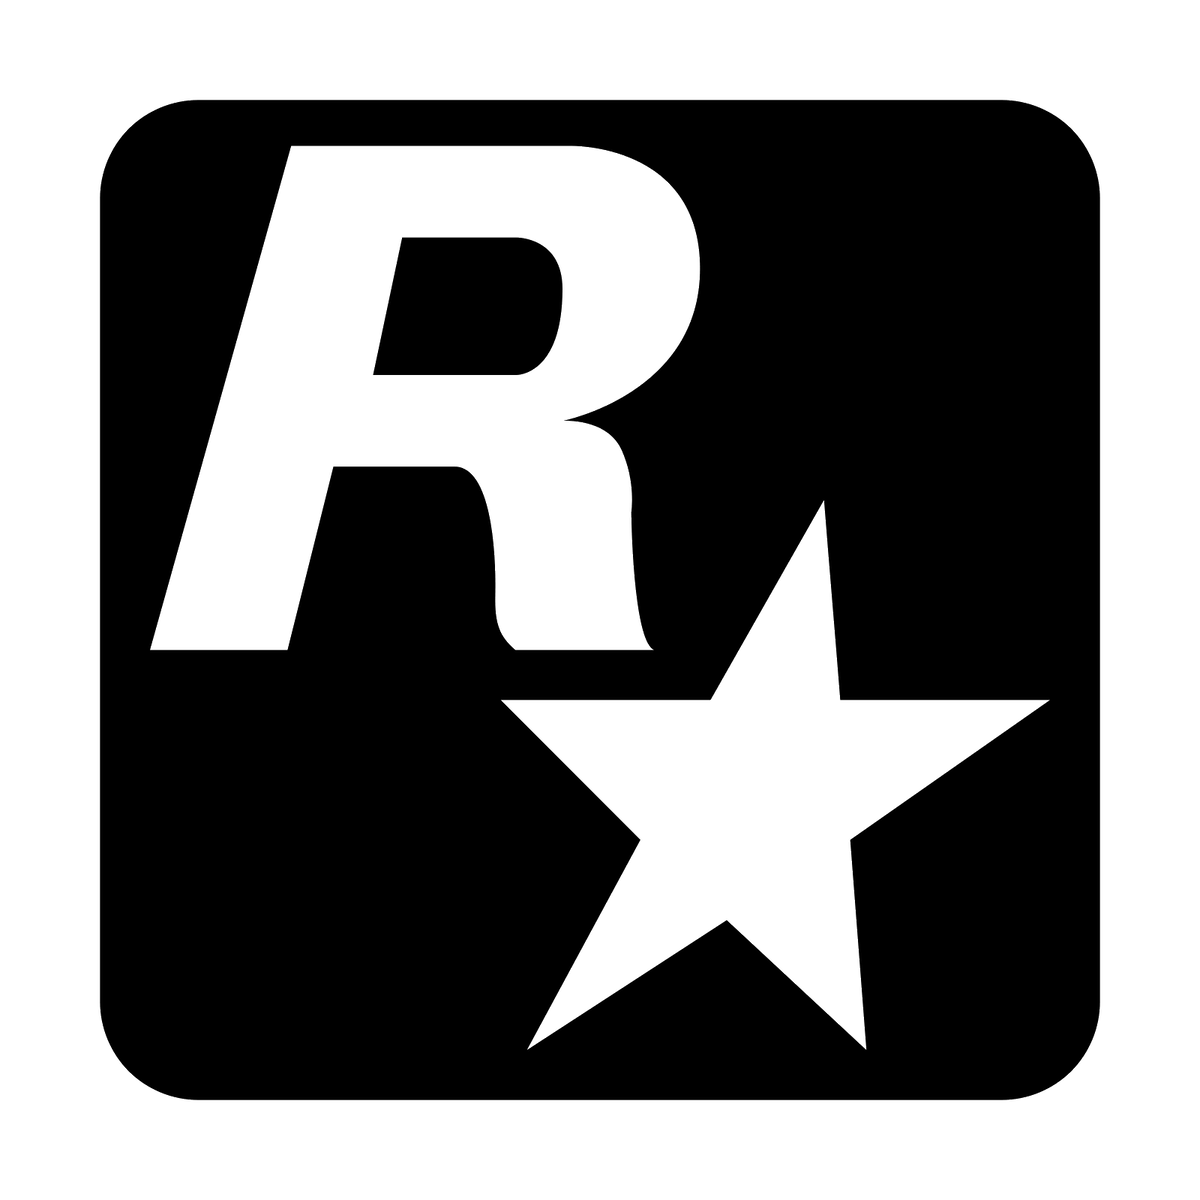 Rockstar games logo. Значок рокстар. Рокс эмблема. Логотип рокстар Норс. Логотип рокстар